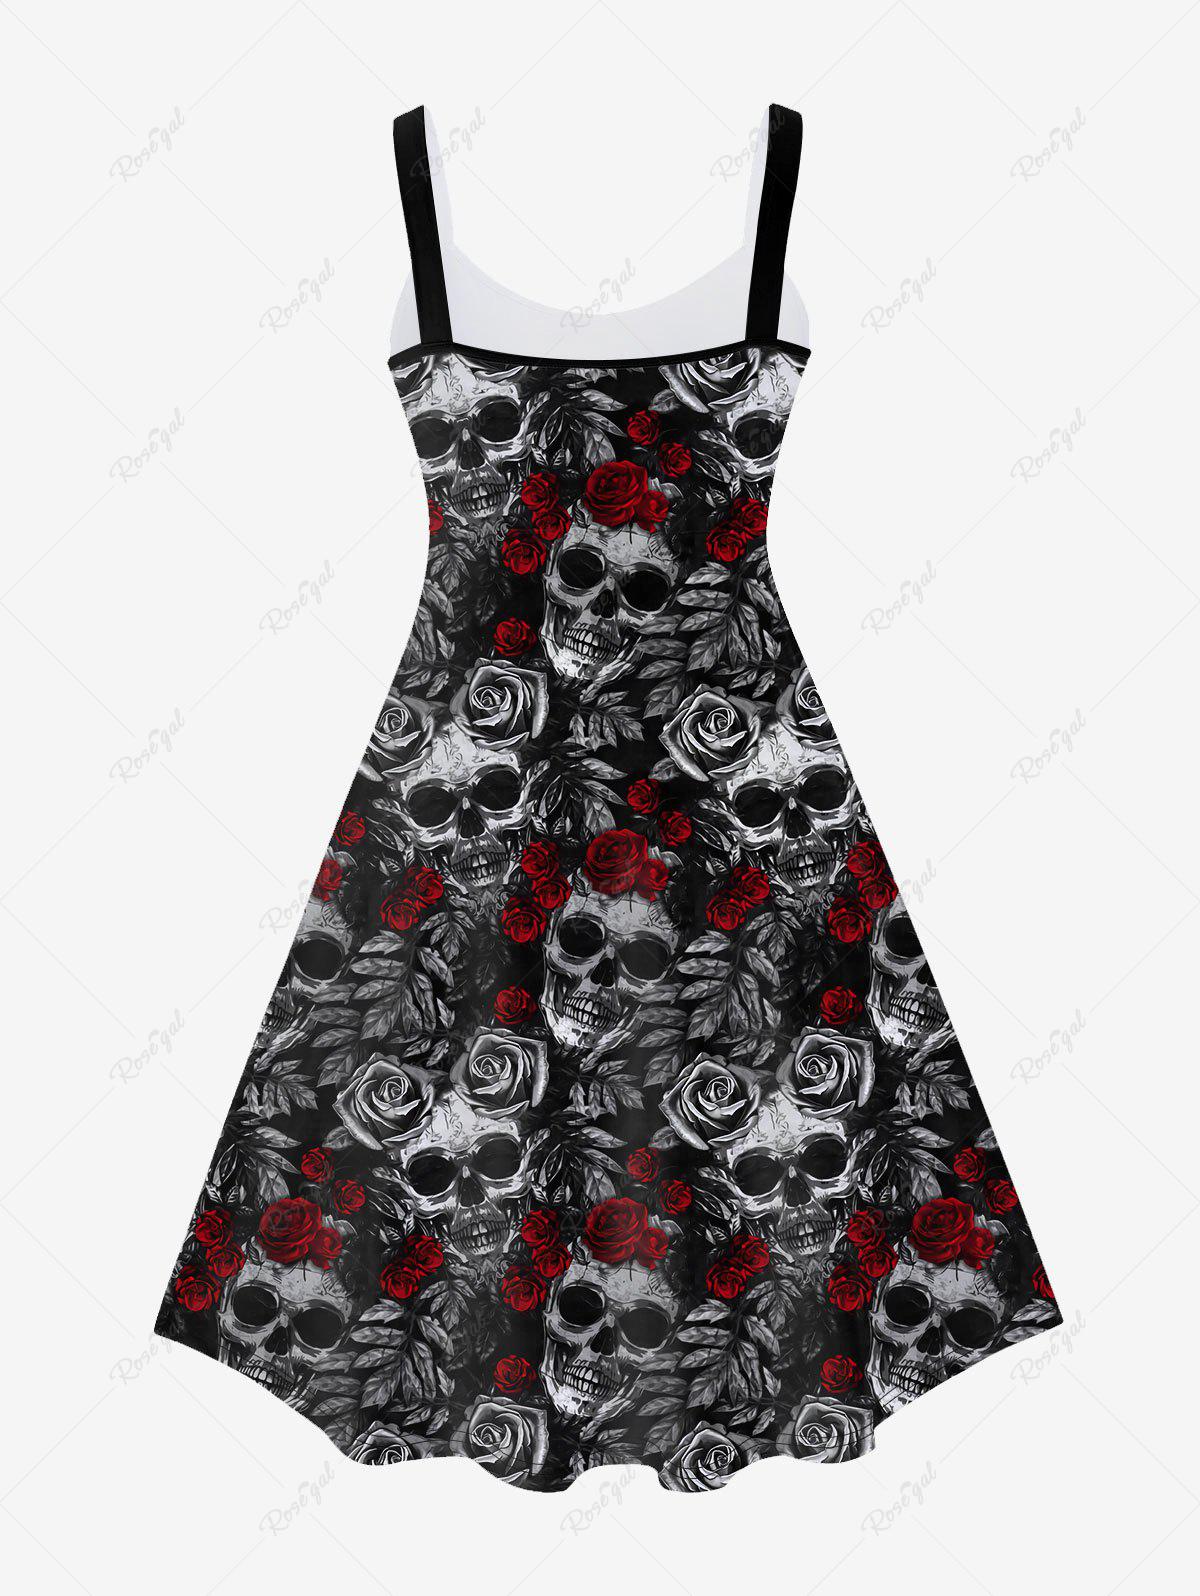 💗Lauren Loves💗Gothic Skull Rose Print Sleeveless A Line Dress